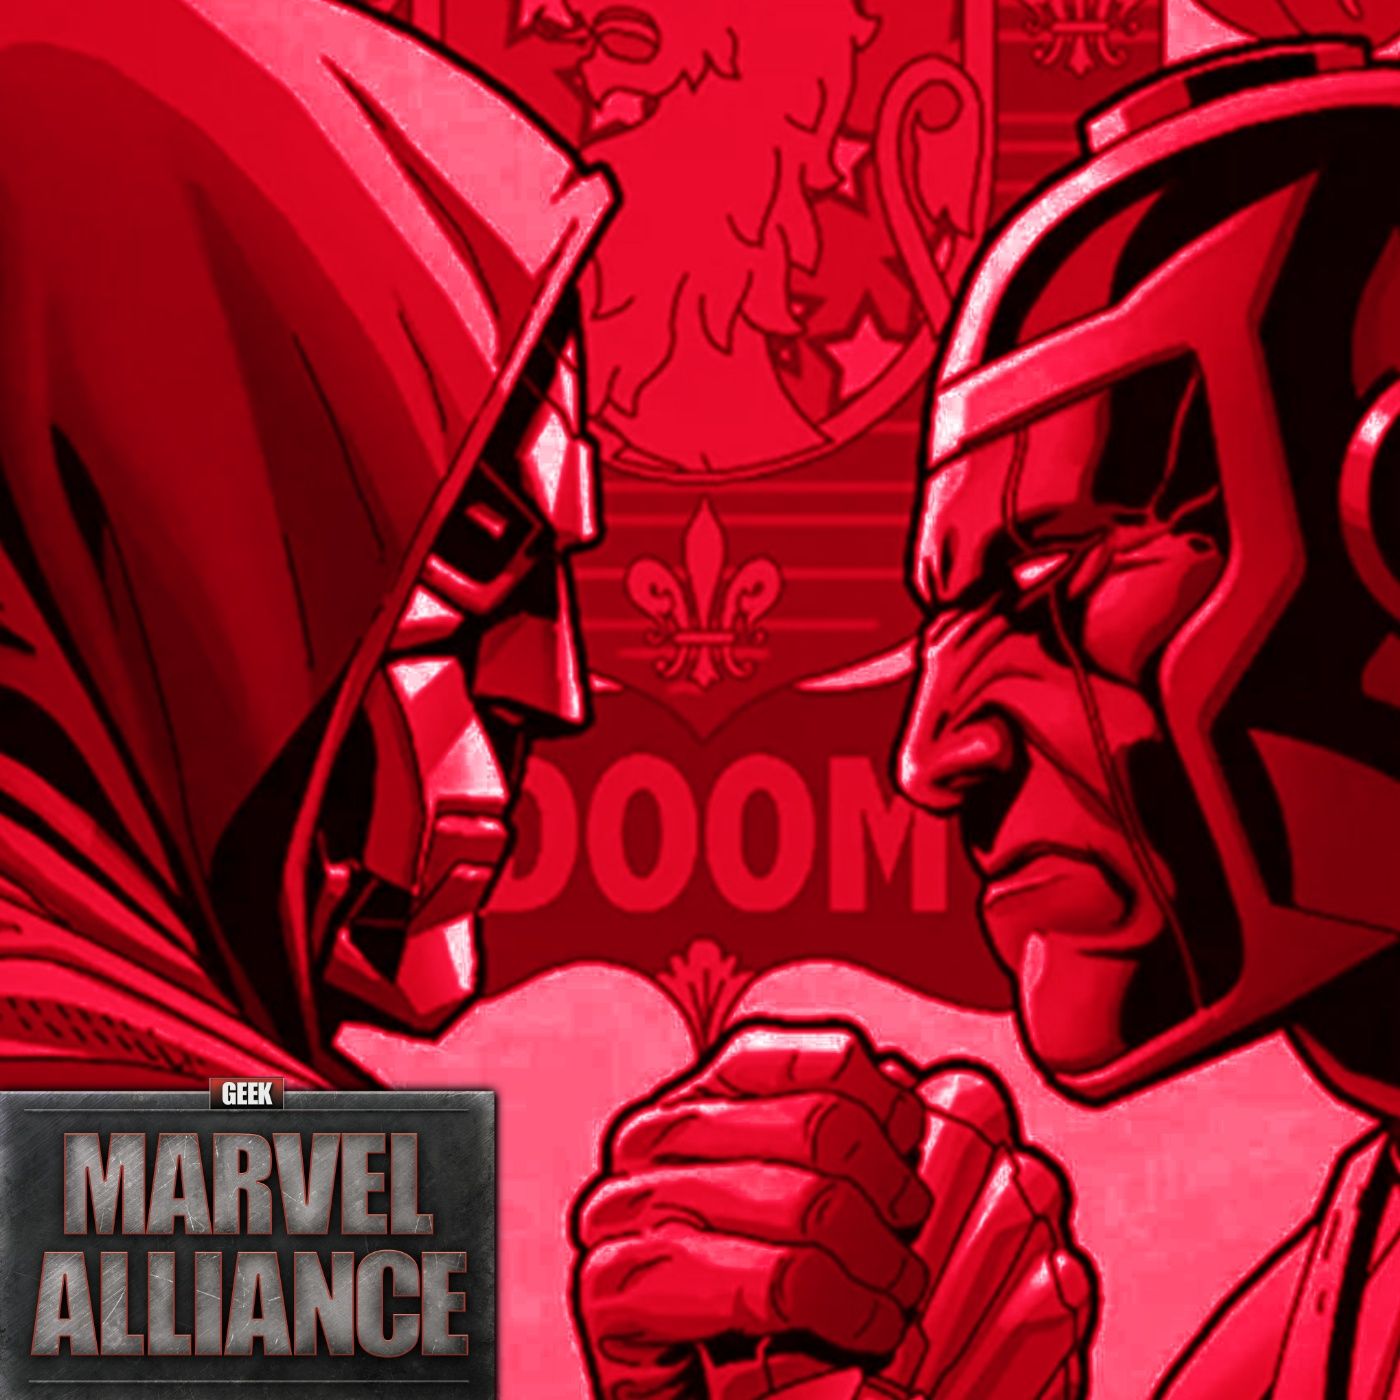 Jonathan Majors Fired From Marvel, What's Next For Kang? : Marvel Alliance Vol. 195